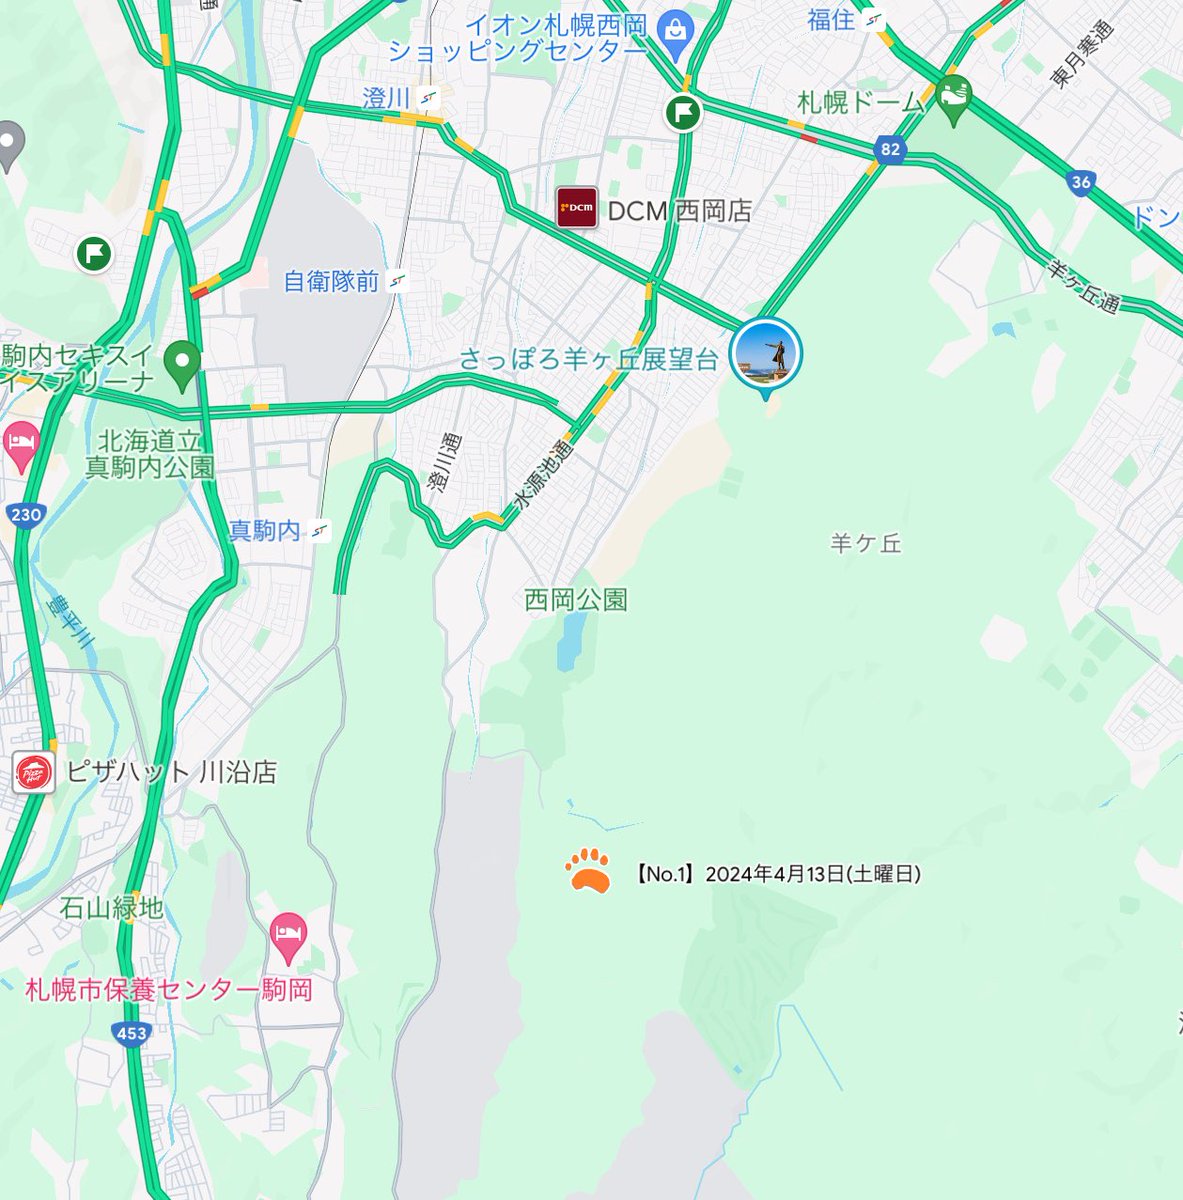 札幌で今年初めてのヒグマ情報🐻
豊平区自然歩道(西岡レクの森ルート)で足跡発見⚠️
#札幌市